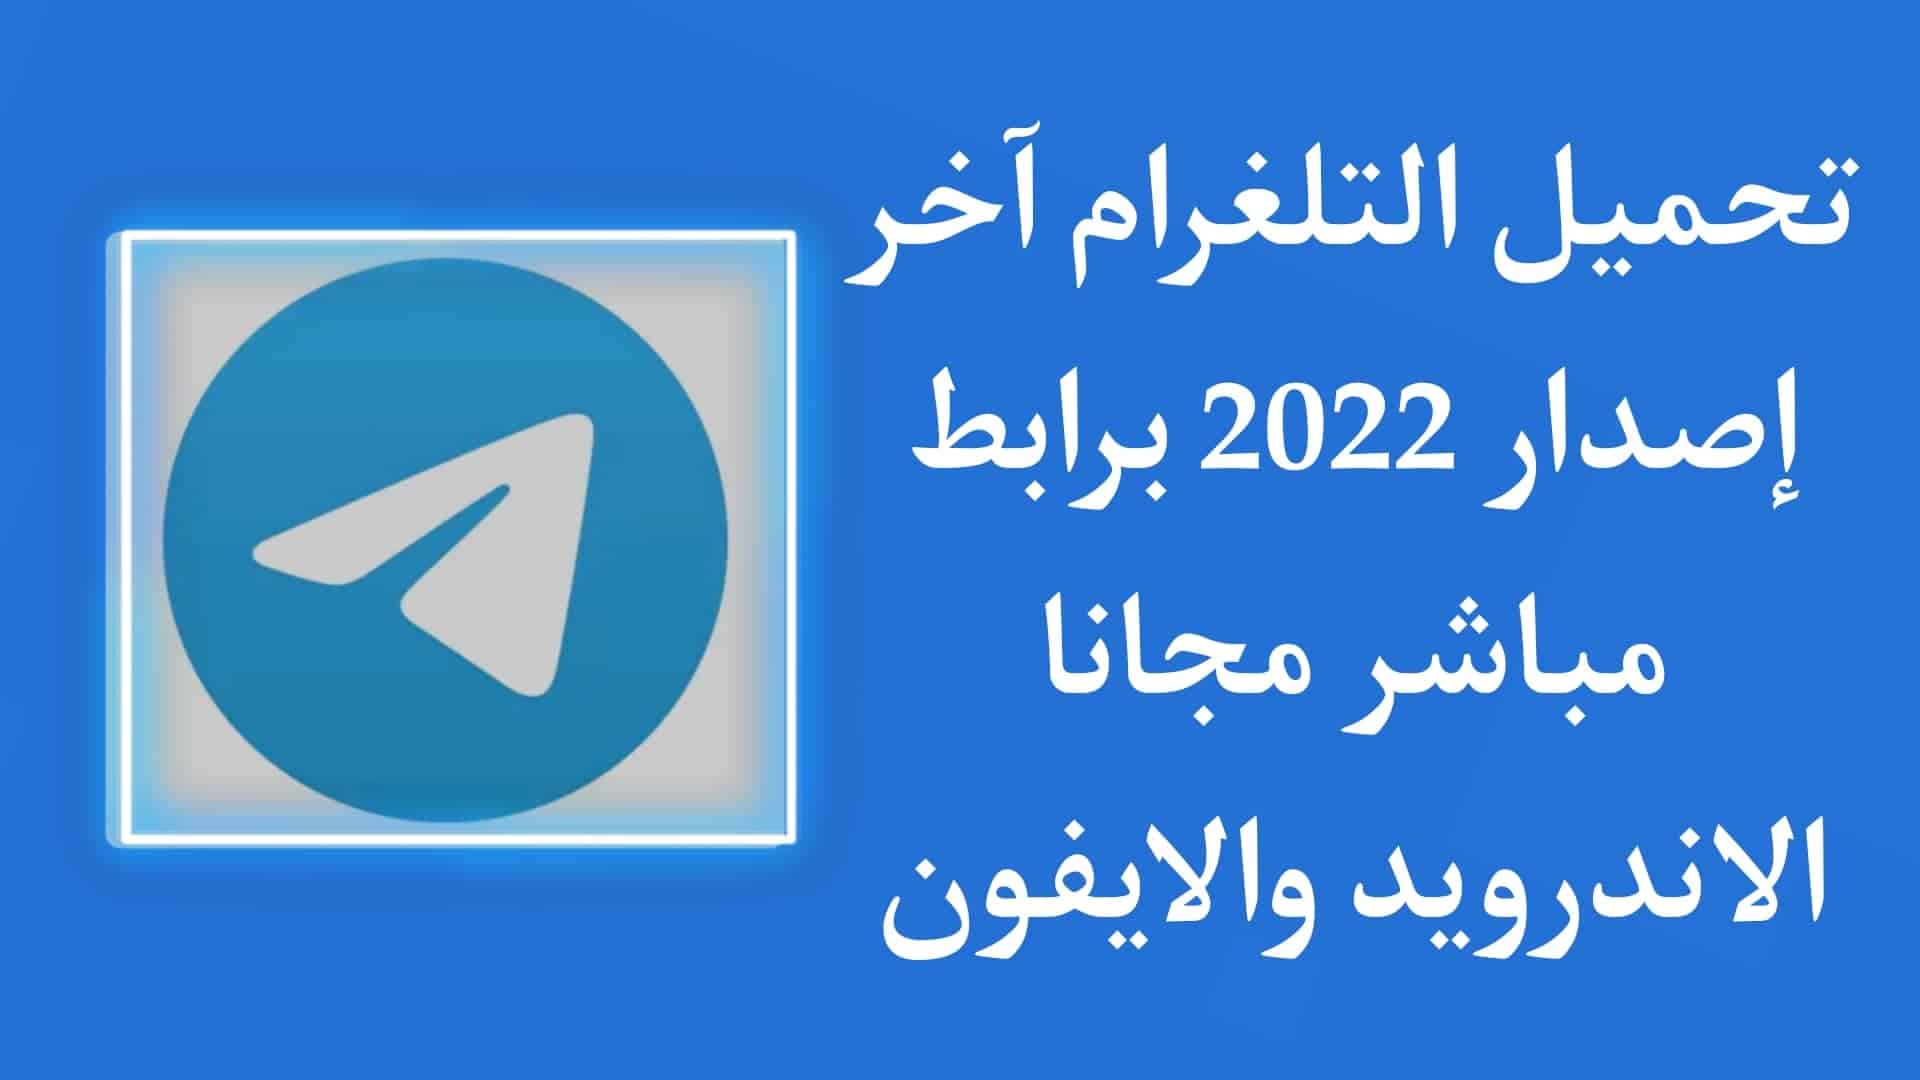 تحميل تلغرام اخر اصدار 2022 Telegram للاندرويد والايفون مجانا